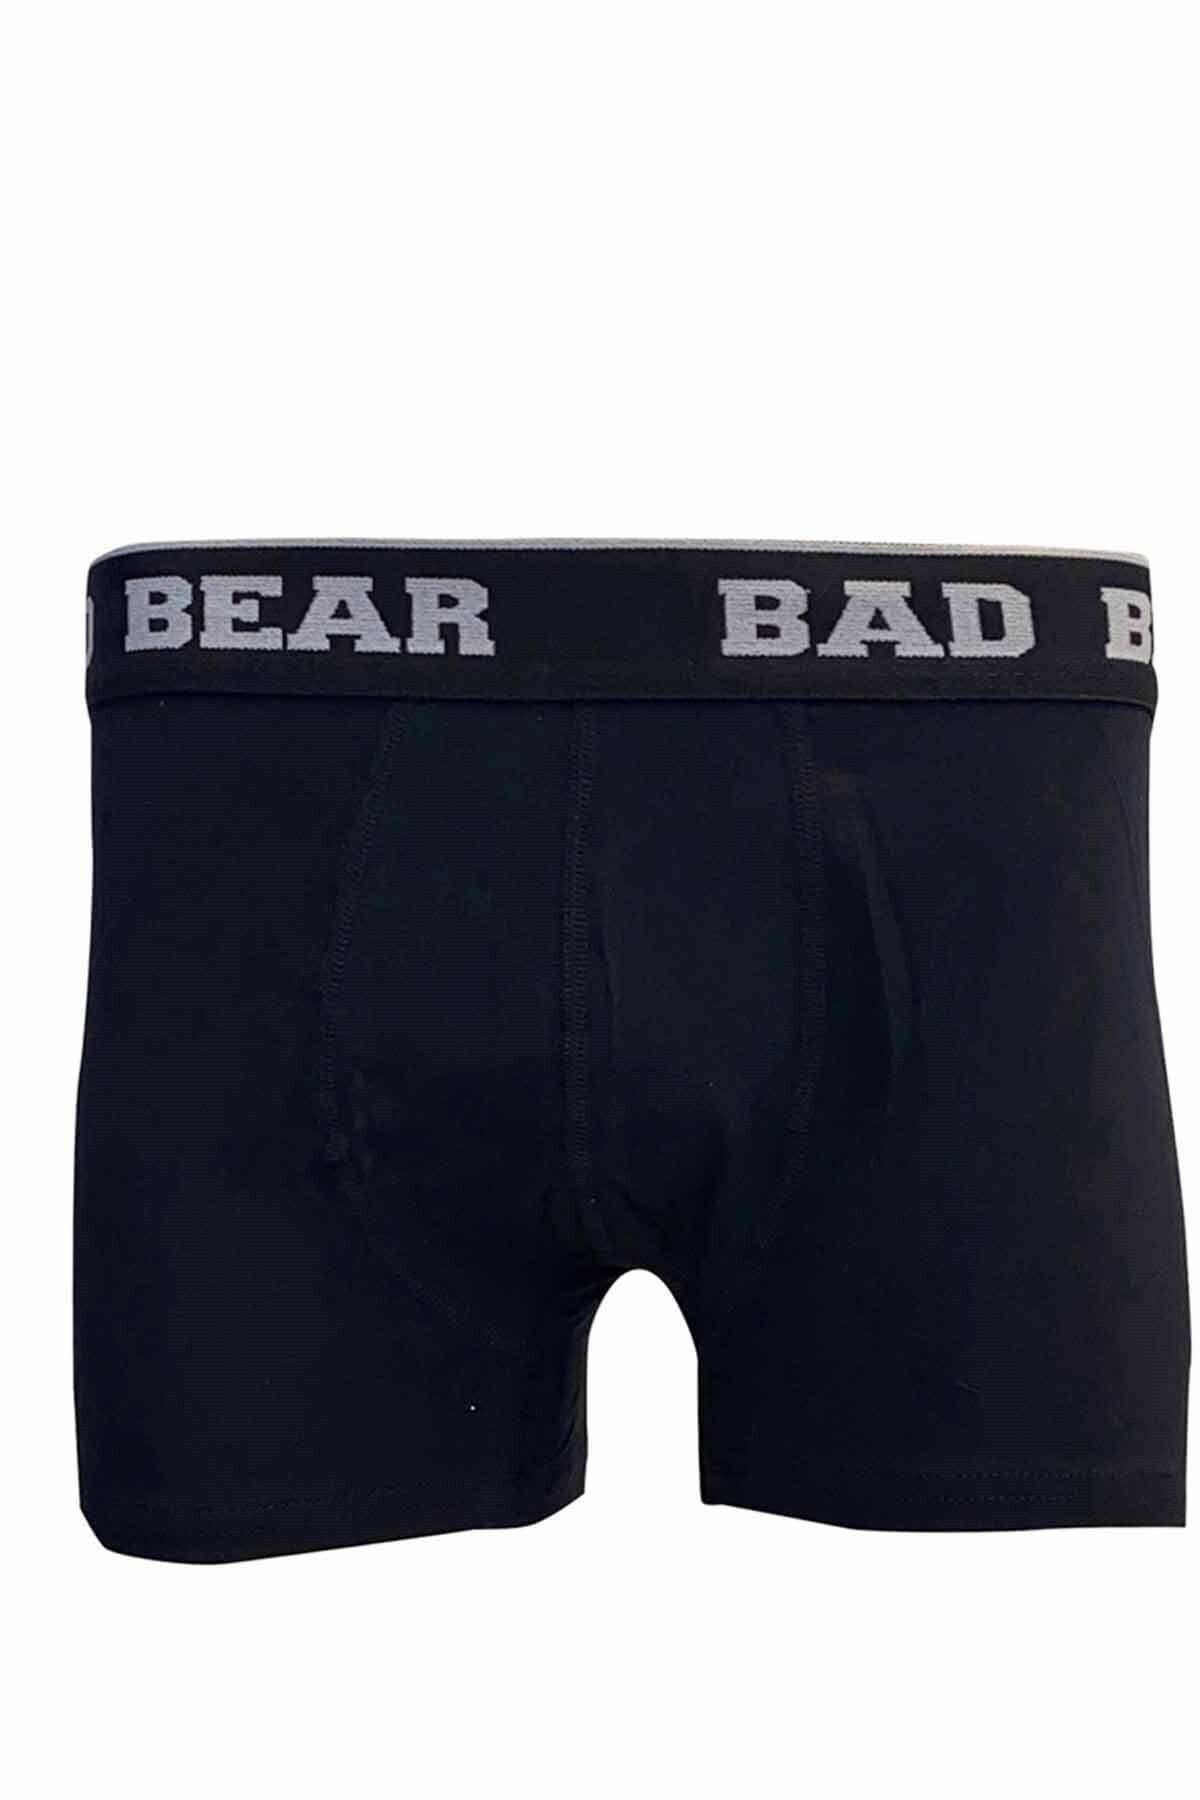 Bad Bear Basic Boxer Erkek Boxer 21.01.03.002nıght